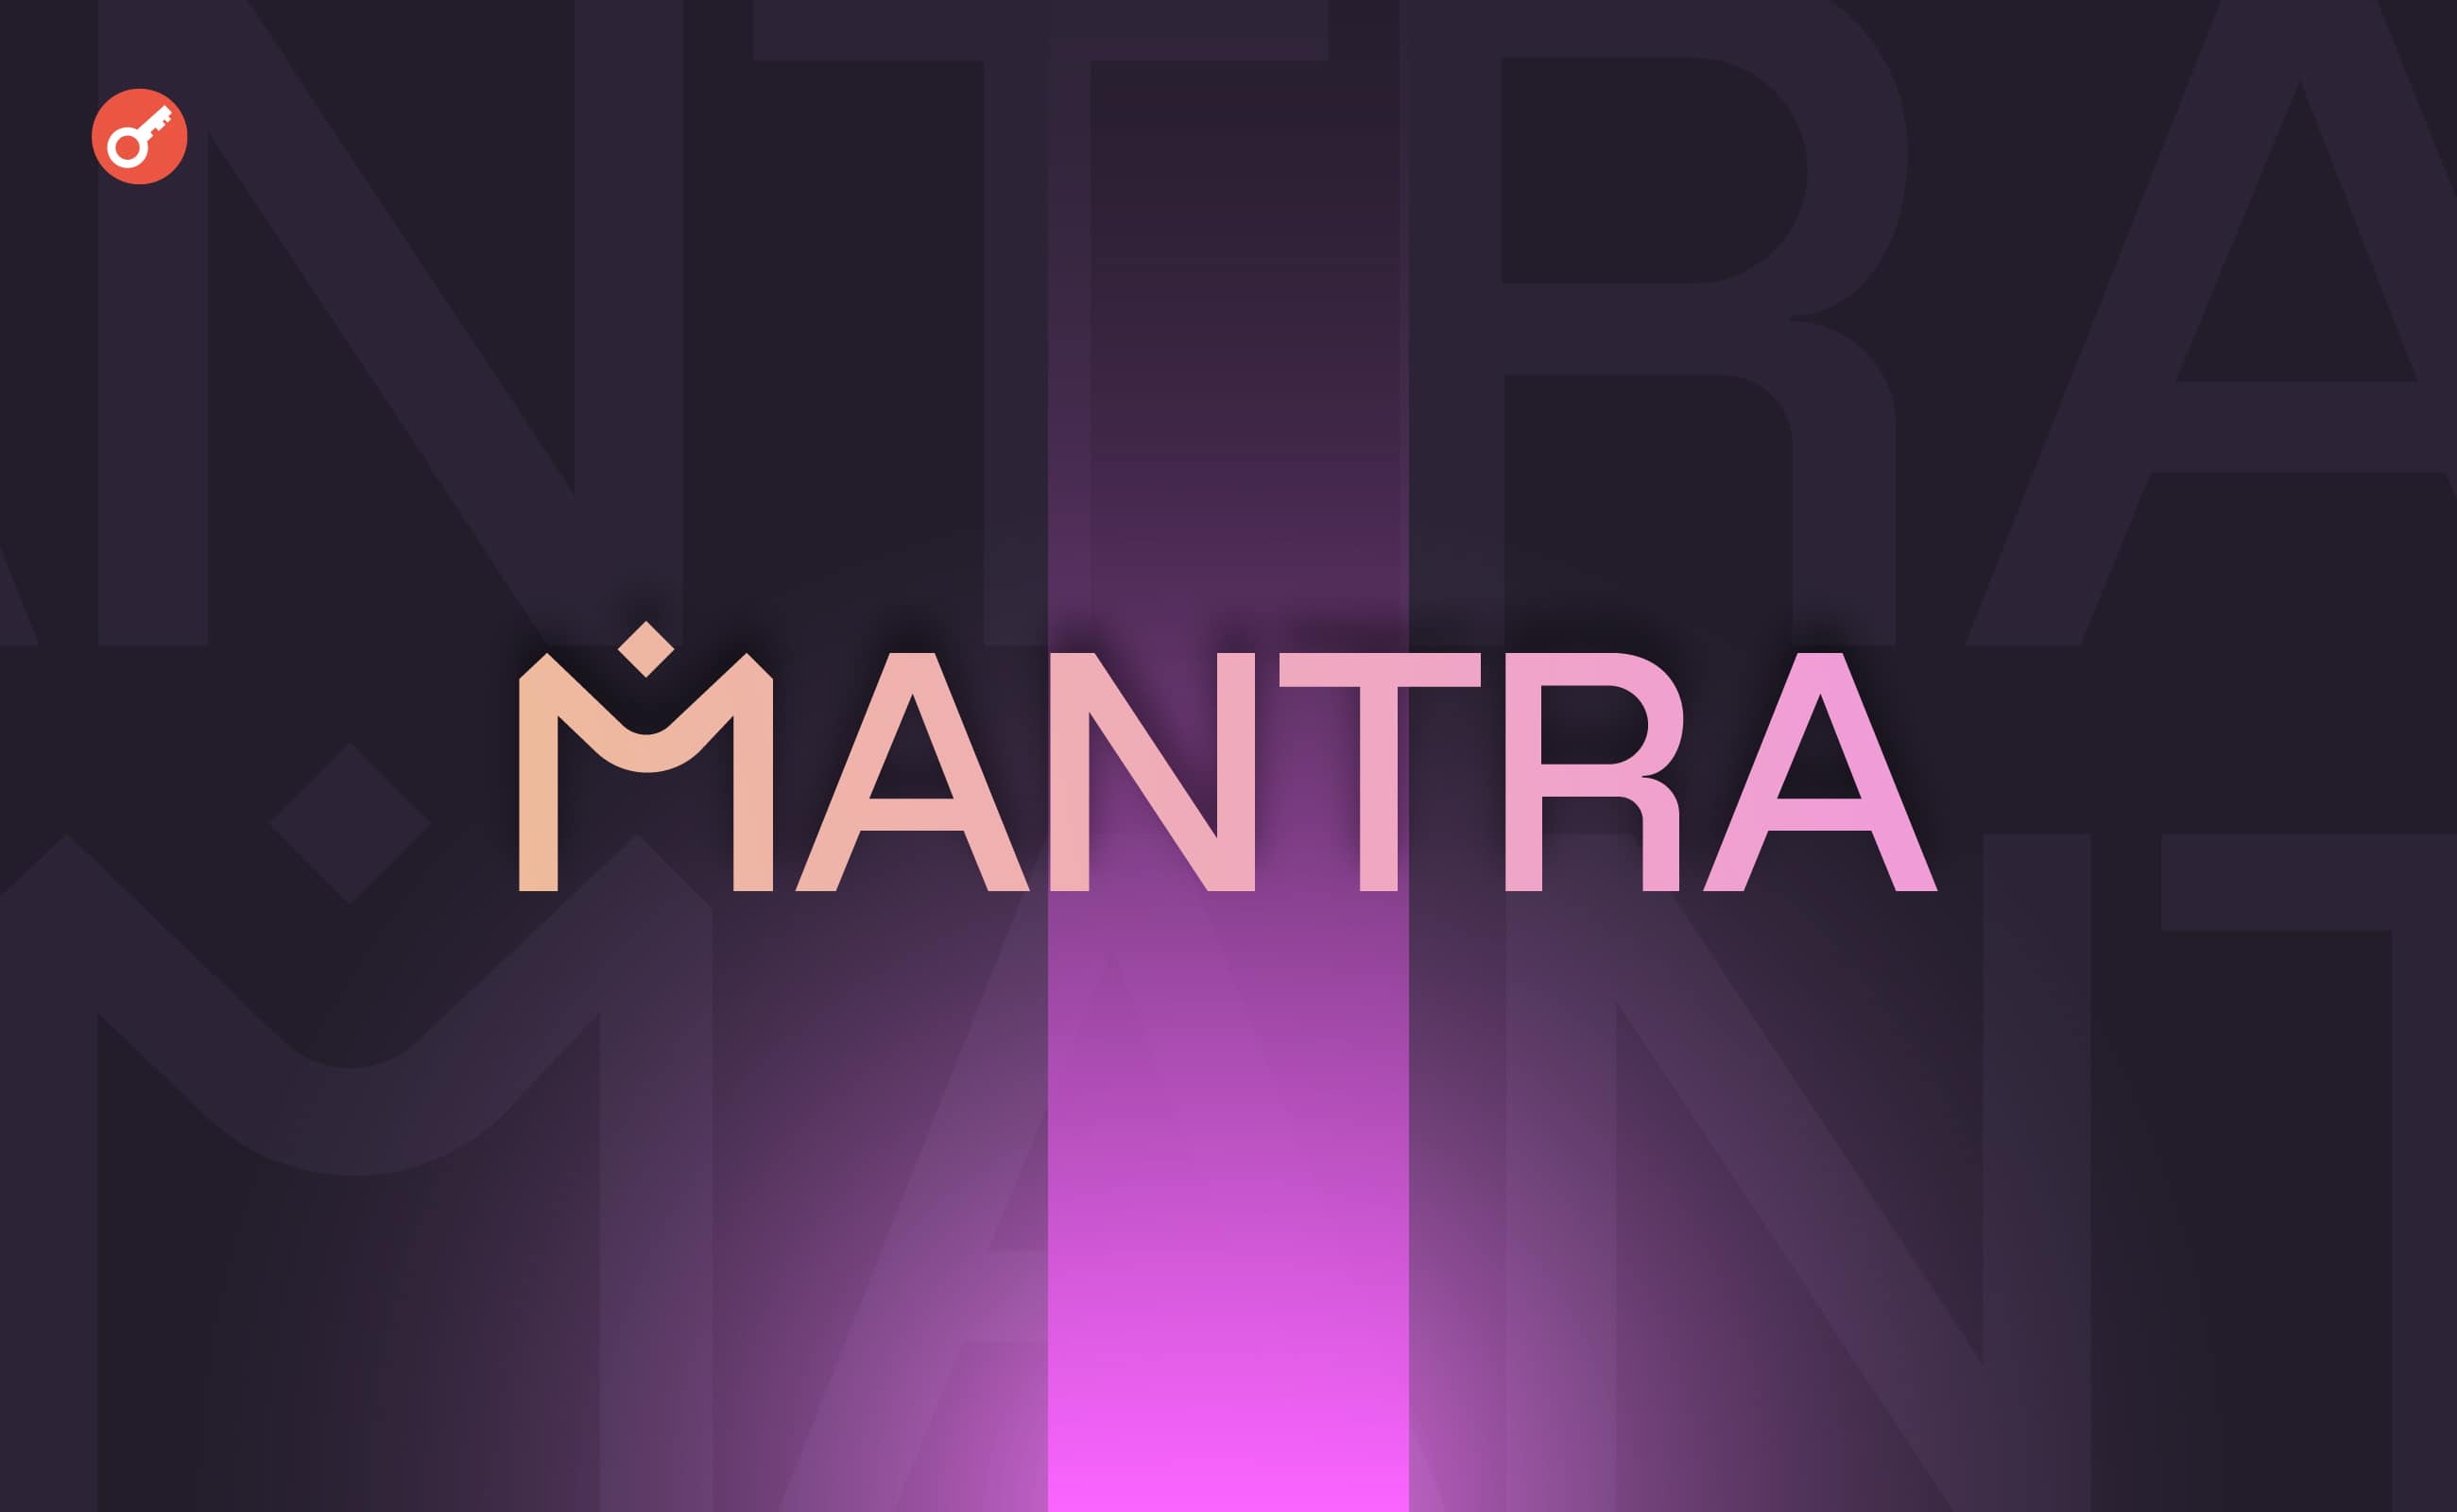 Стартап MANTRA залучив $11 млн інвестицій. Головний колаж новини.